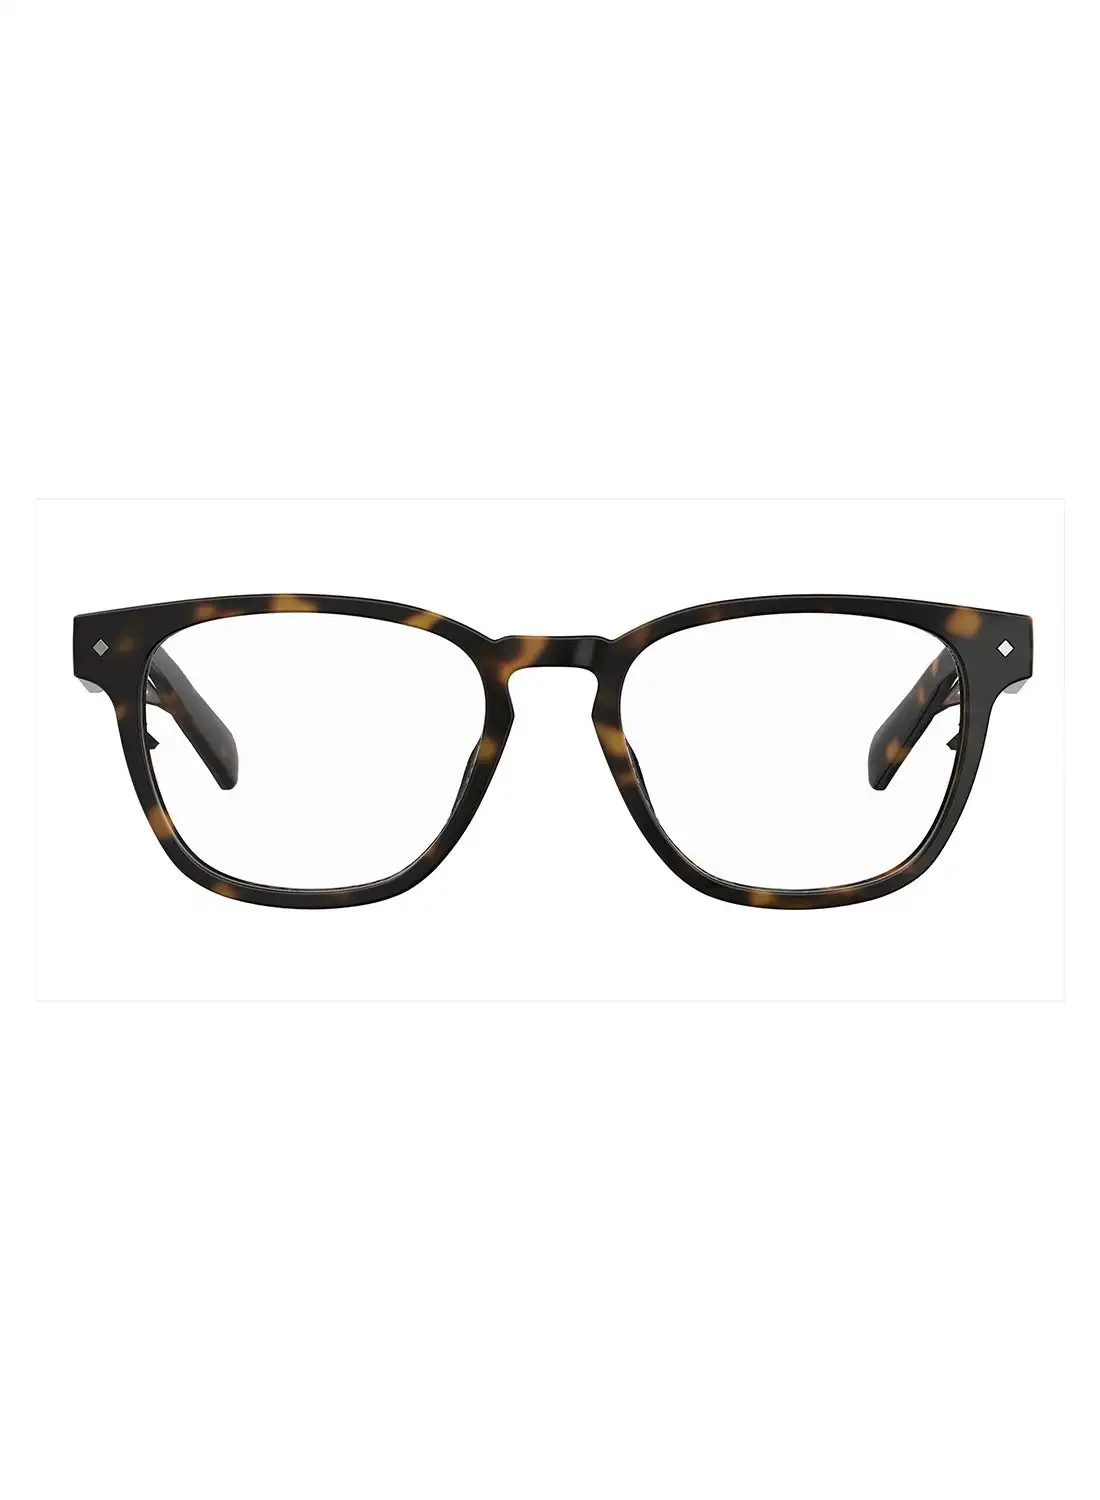 Polaroid Unisex Square Reading Glasses - Pld 0022/R Havana 50 - Lens Size: 50 Mm